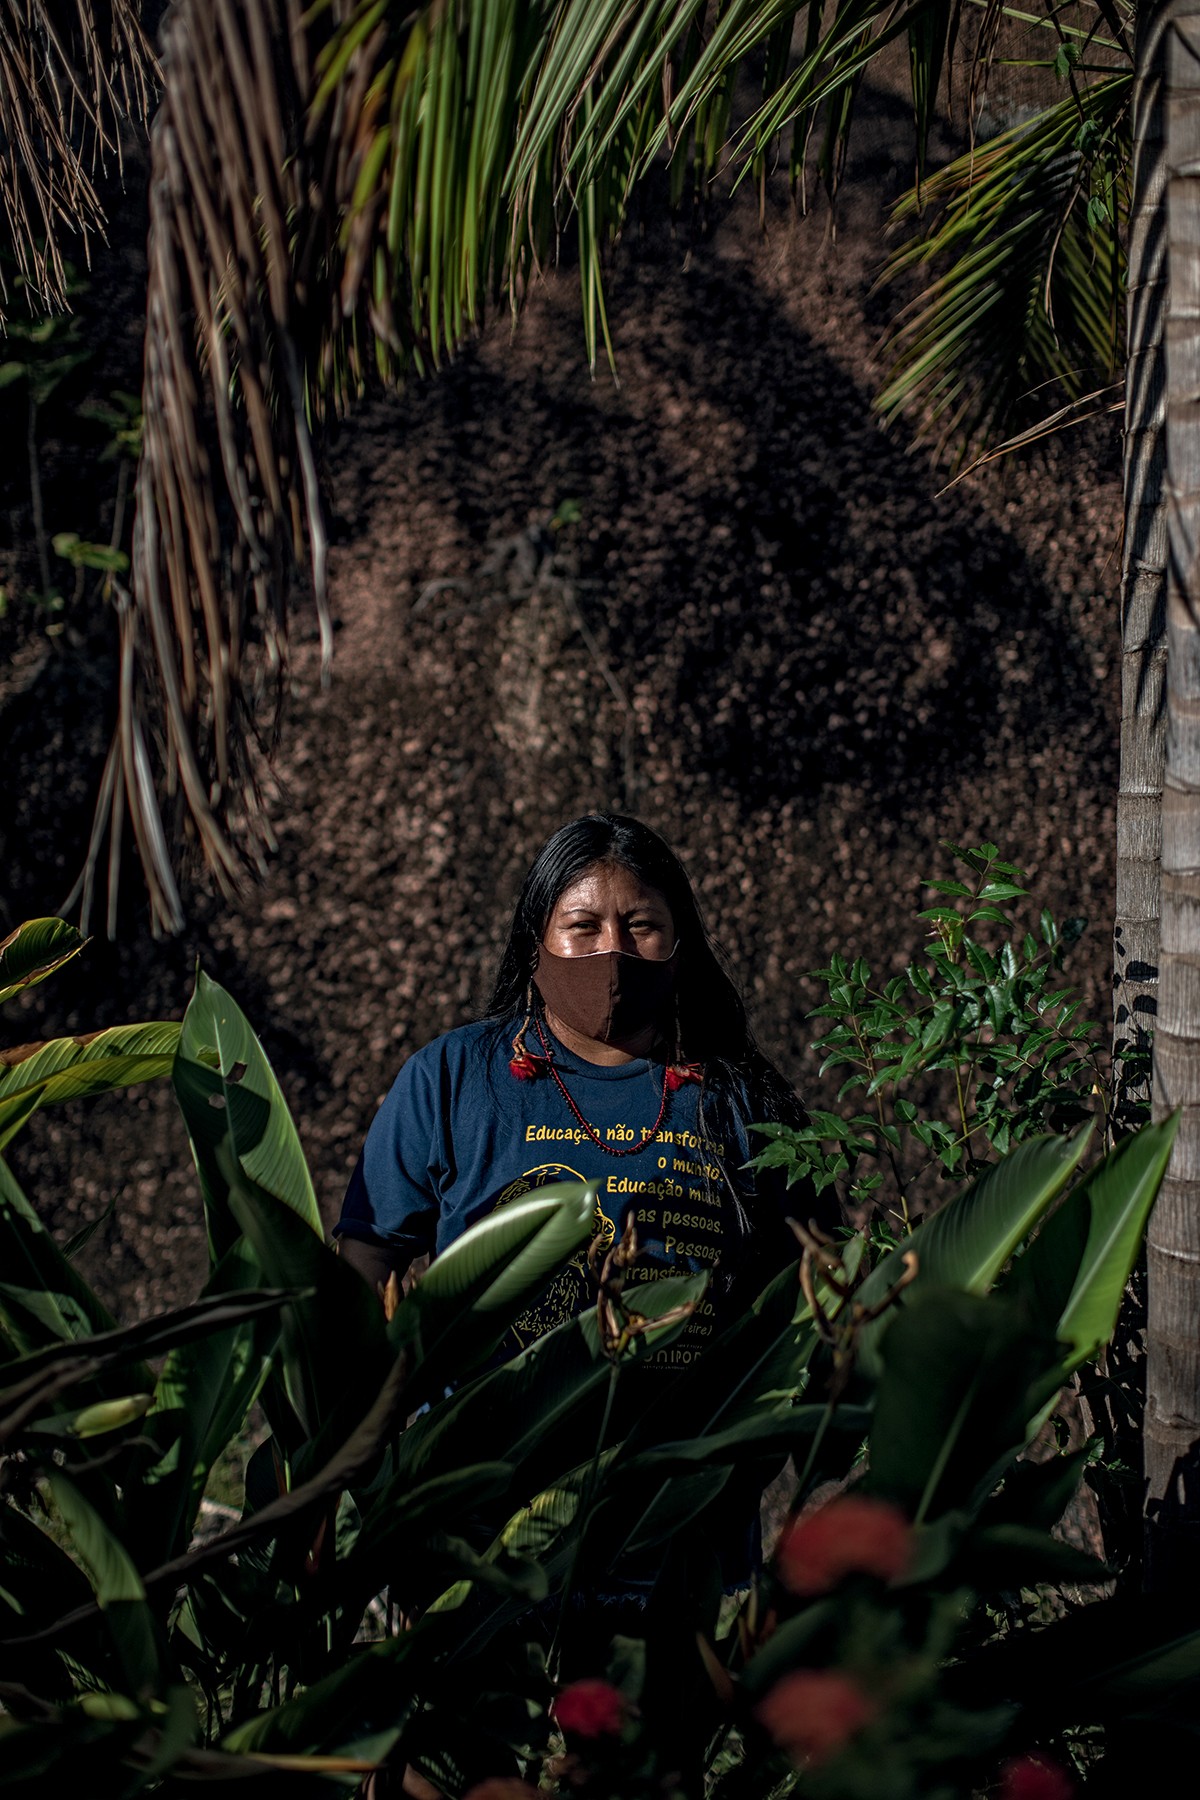 Alessandra Munduruku posa próximo ao Porto de Cargill, na cidade de Santarém, pará. MundurukuS e outras etnias locais são constantemente perseguidos e ameaçados de morte por produtores de soja da região  do Pará (Foto: Fernanda Liguabue e Victor Moriyama)